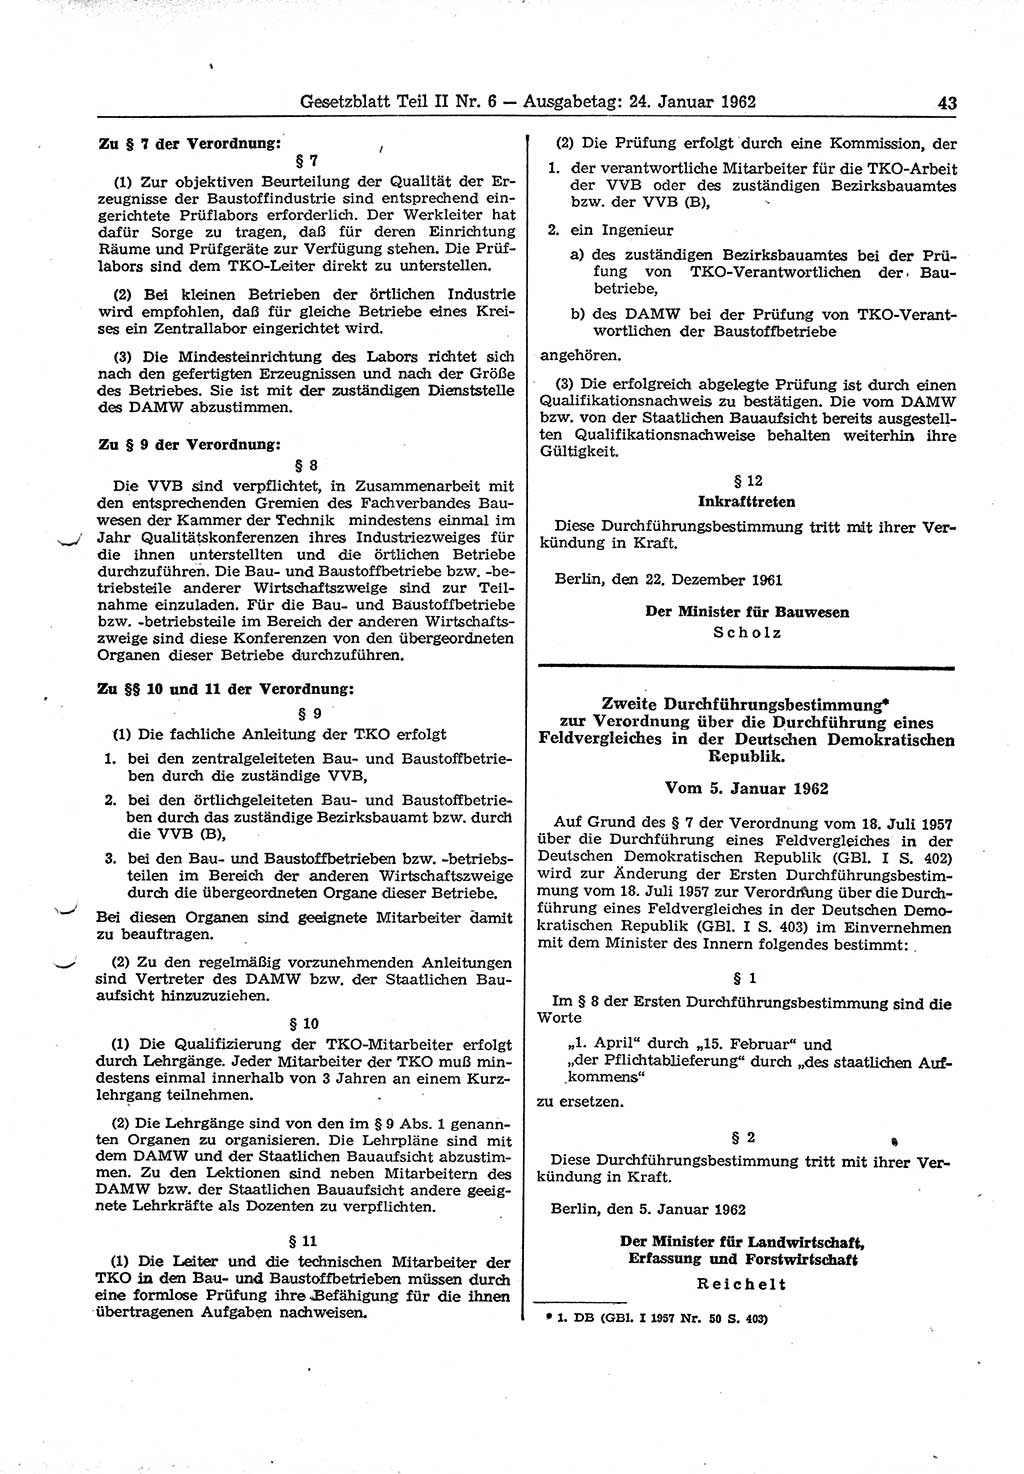 Gesetzblatt (GBl.) der Deutschen Demokratischen Republik (DDR) Teil ⅠⅠ 1962, Seite 43 (GBl. DDR ⅠⅠ 1962, S. 43)